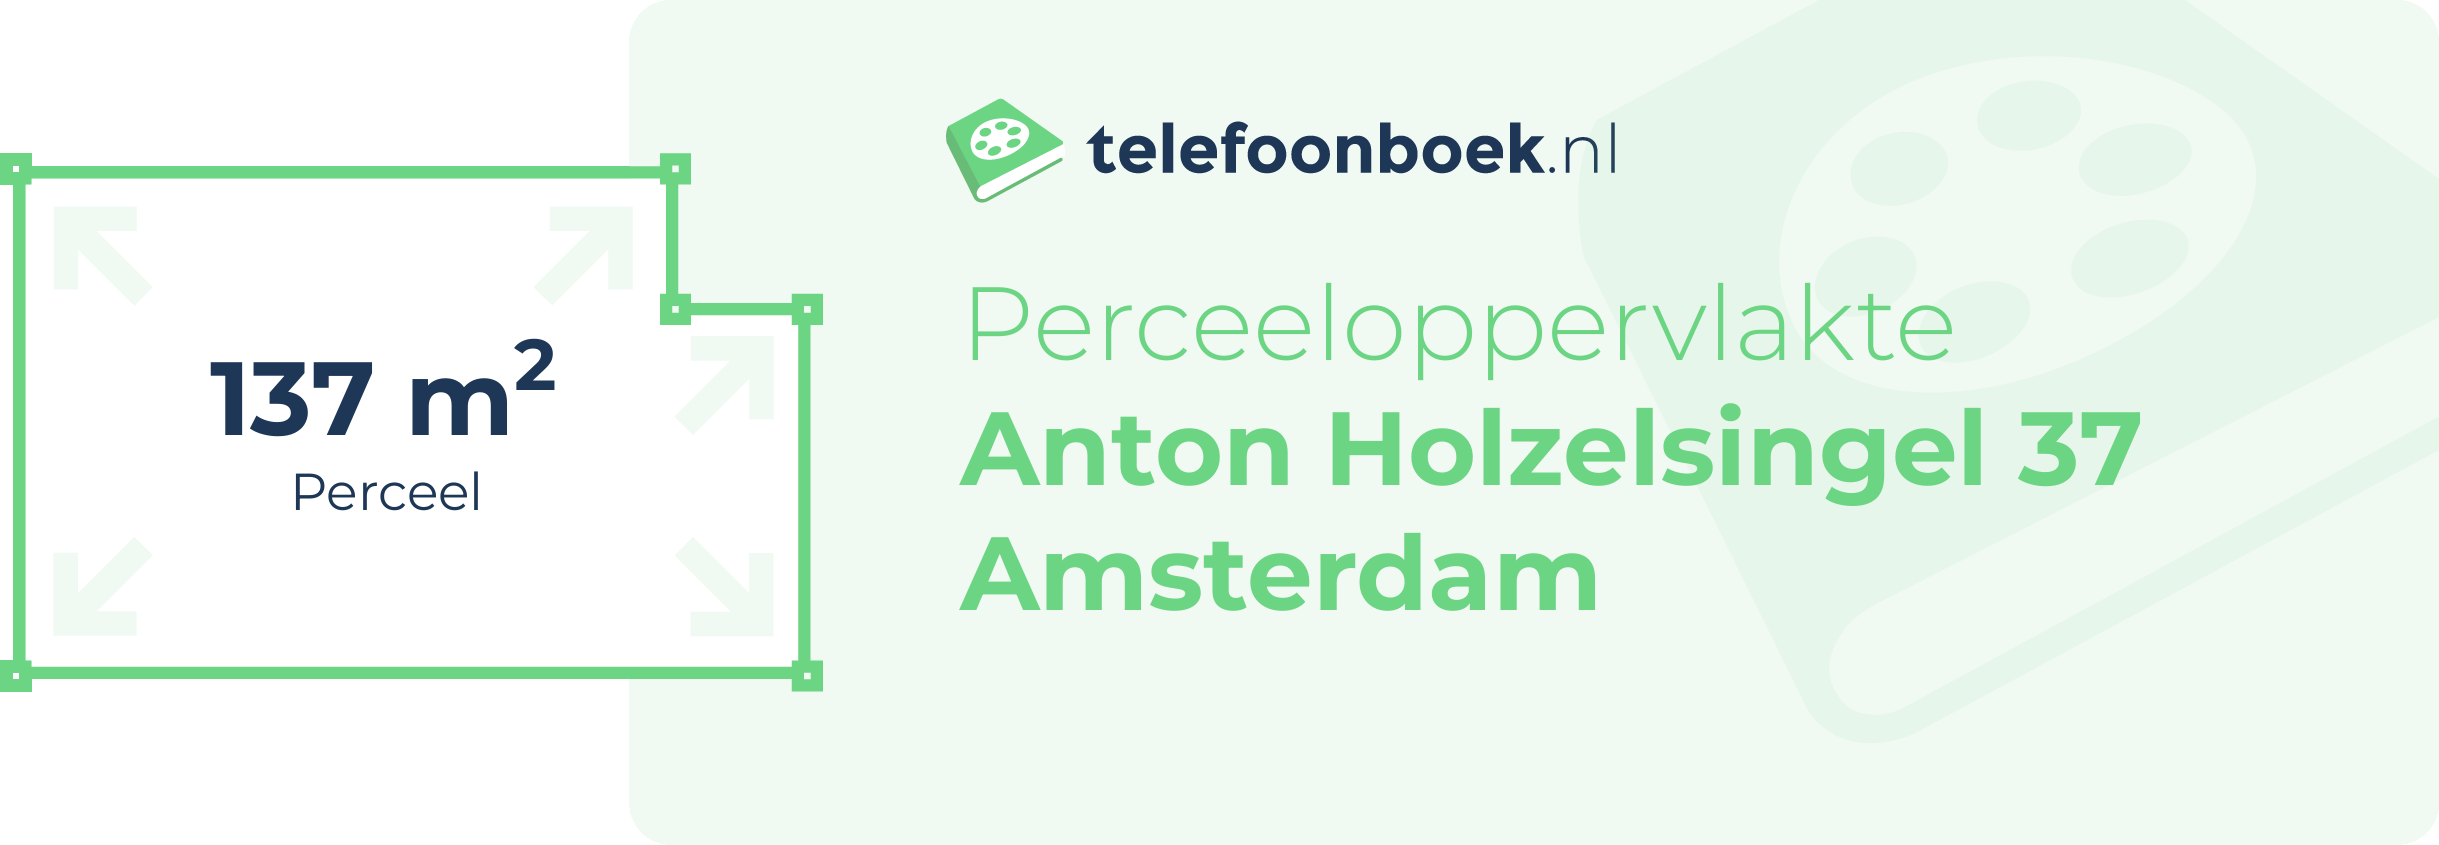 Perceeloppervlakte Anton Holzelsingel 37 Amsterdam